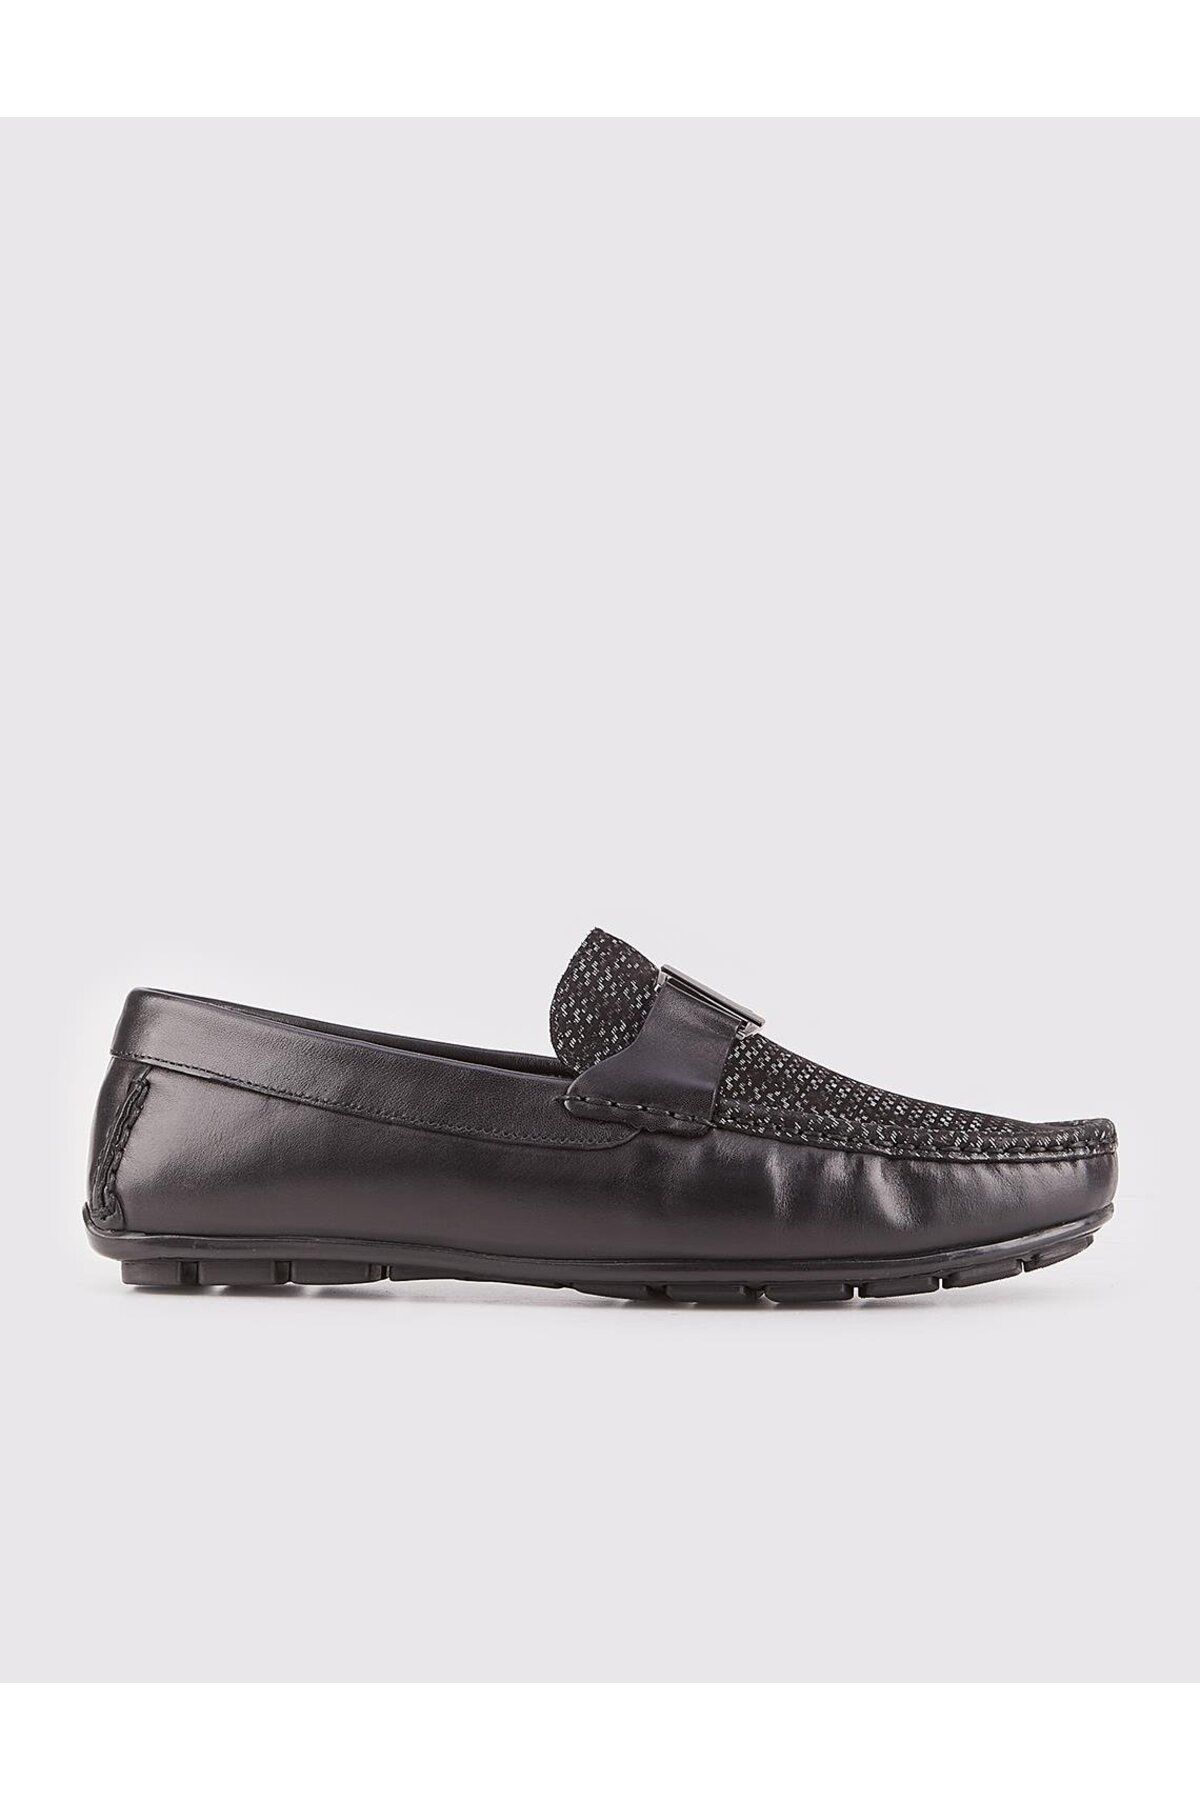 Cabani Hakiki Deri Siyah Özel Tasarımlı Erkek Loafer Ayakkabı